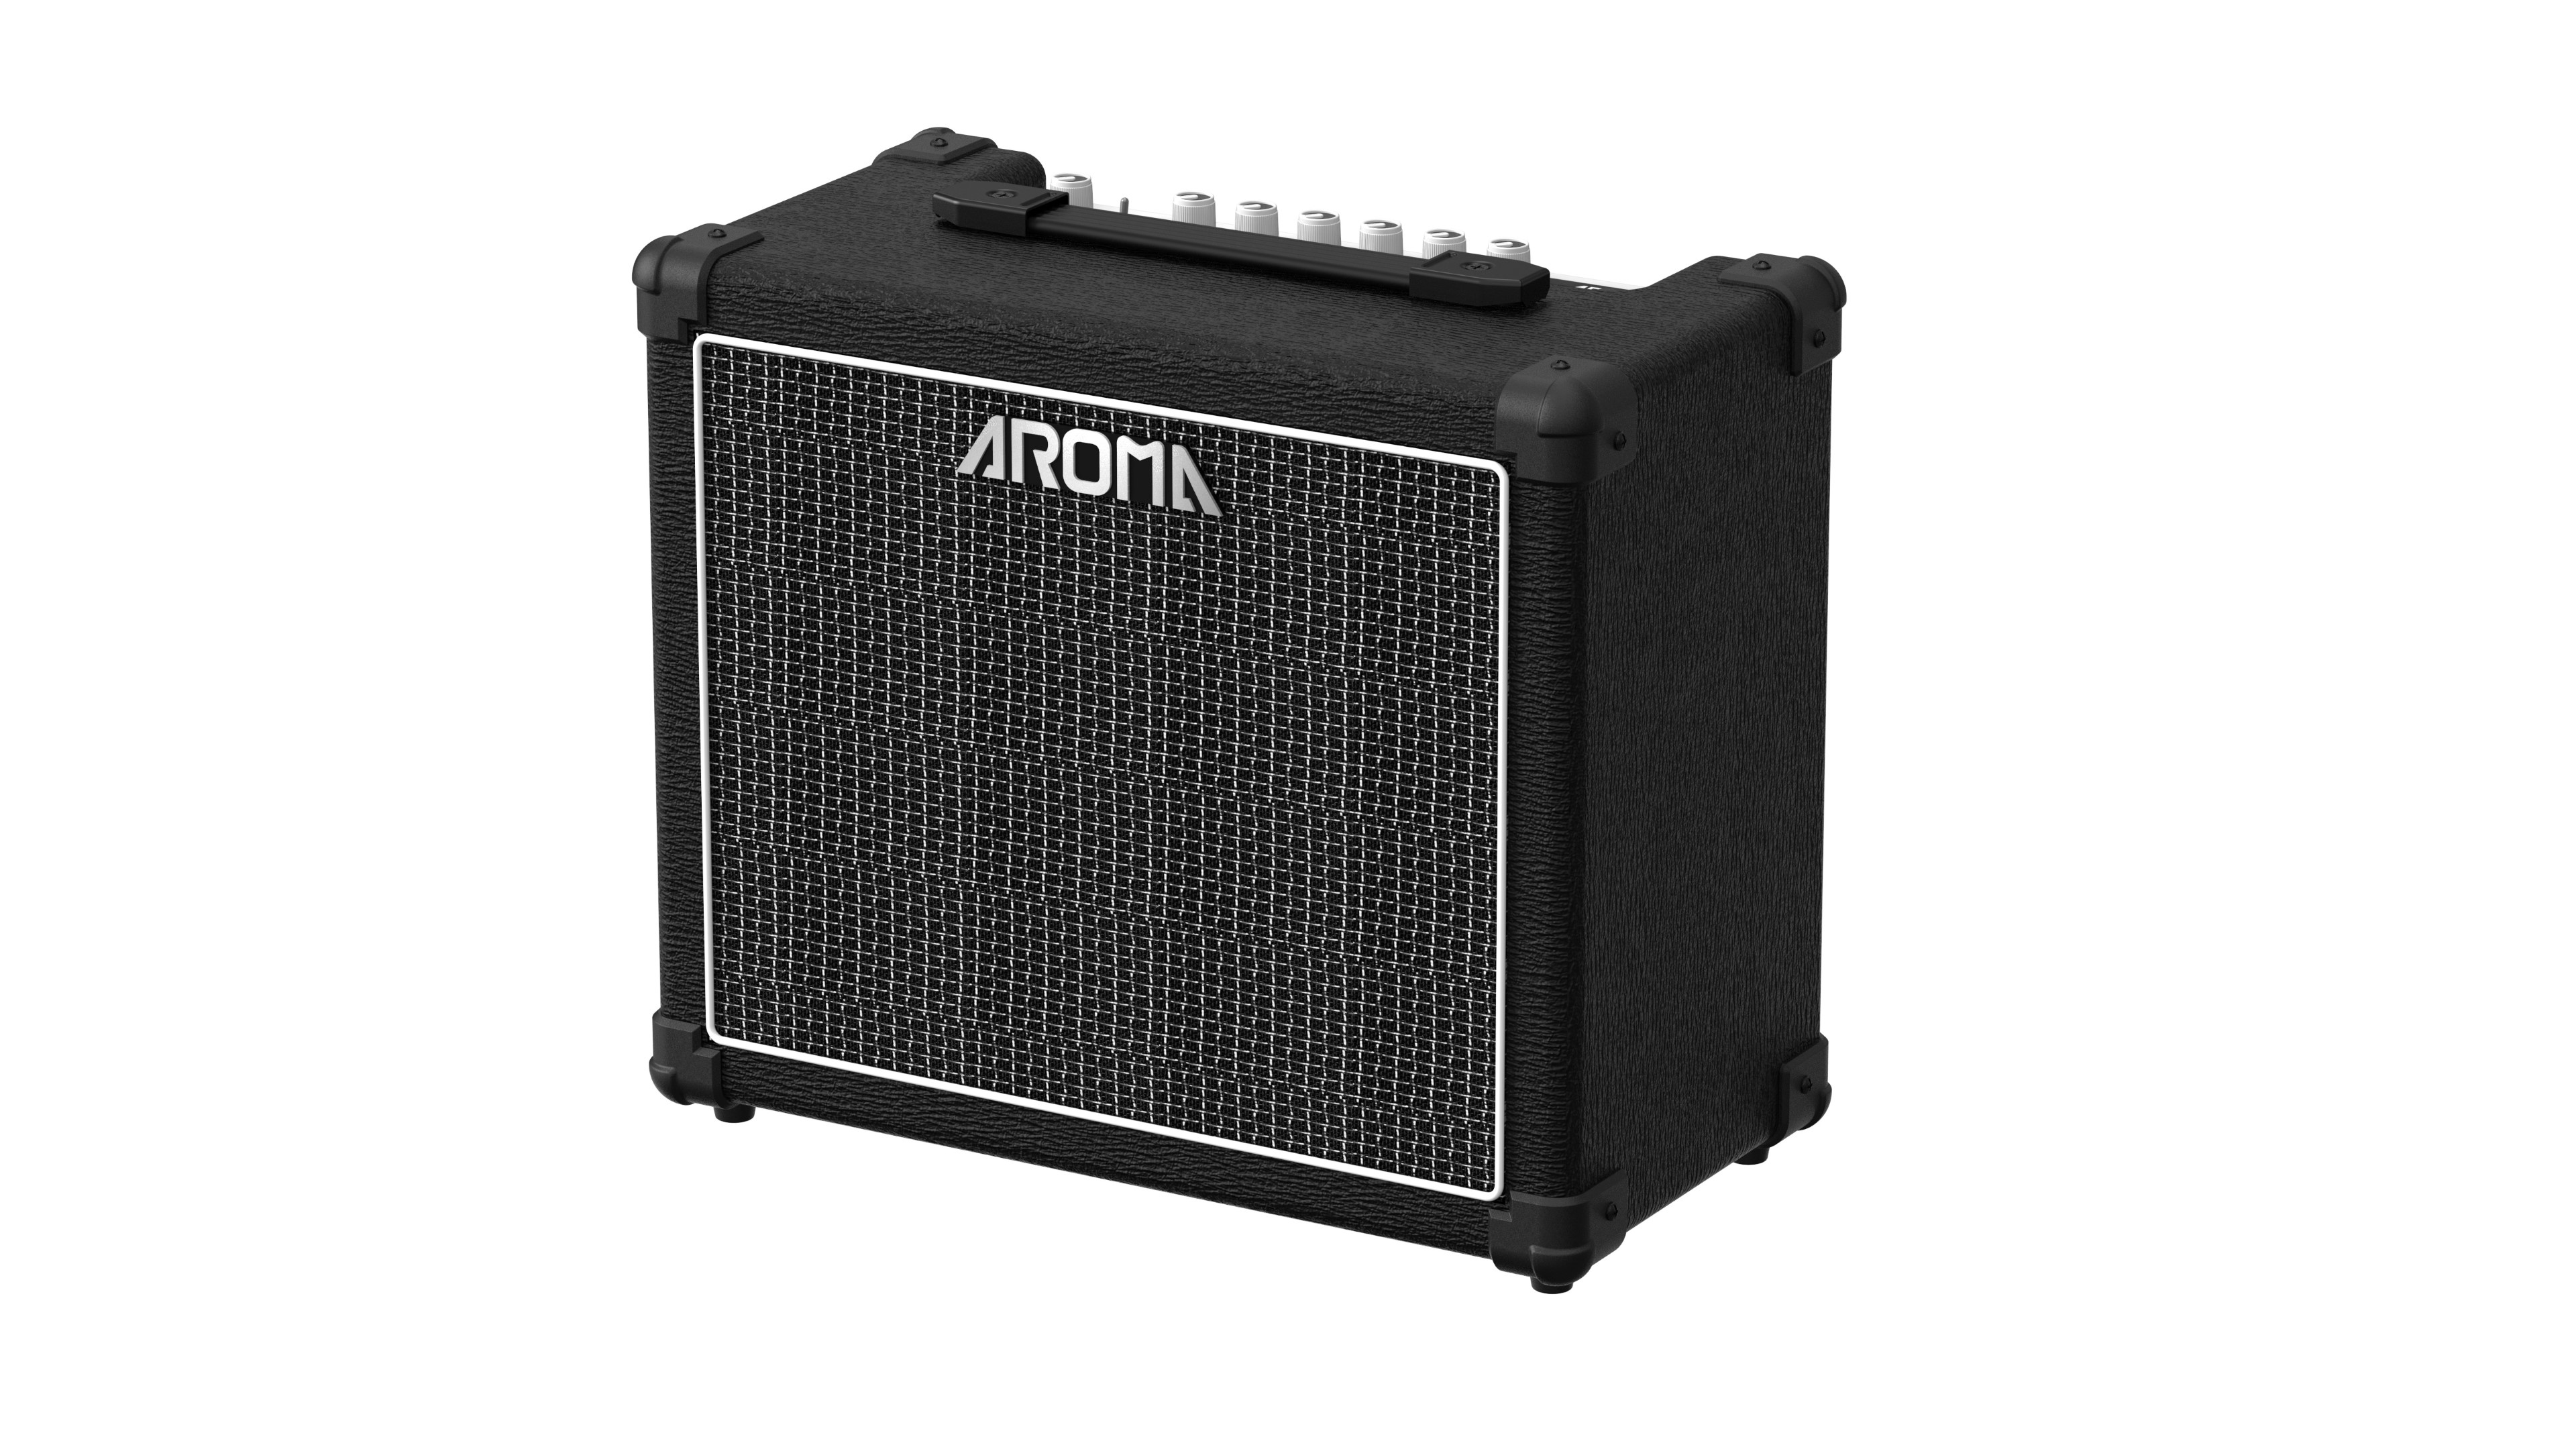 Aroma AG30 E-Gitarren Amp